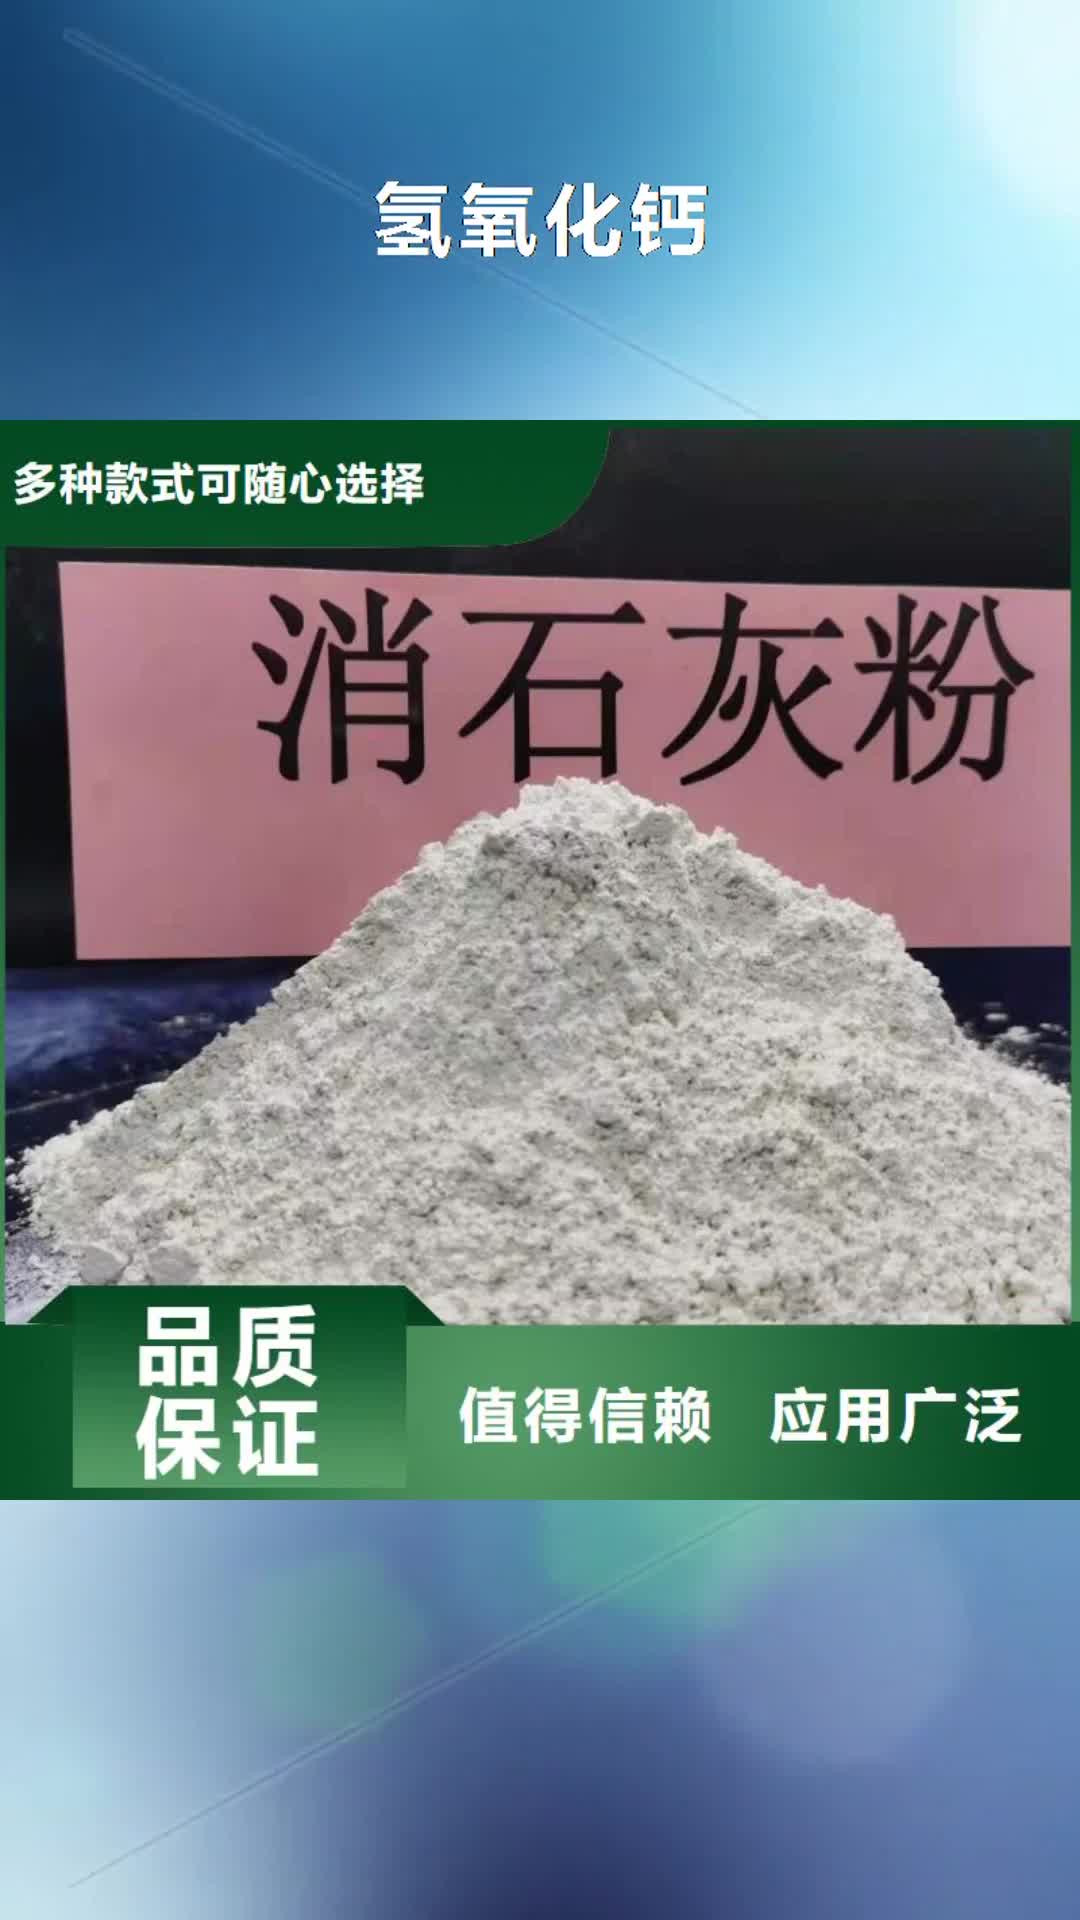 广州 氢氧化钙24小时下单发货